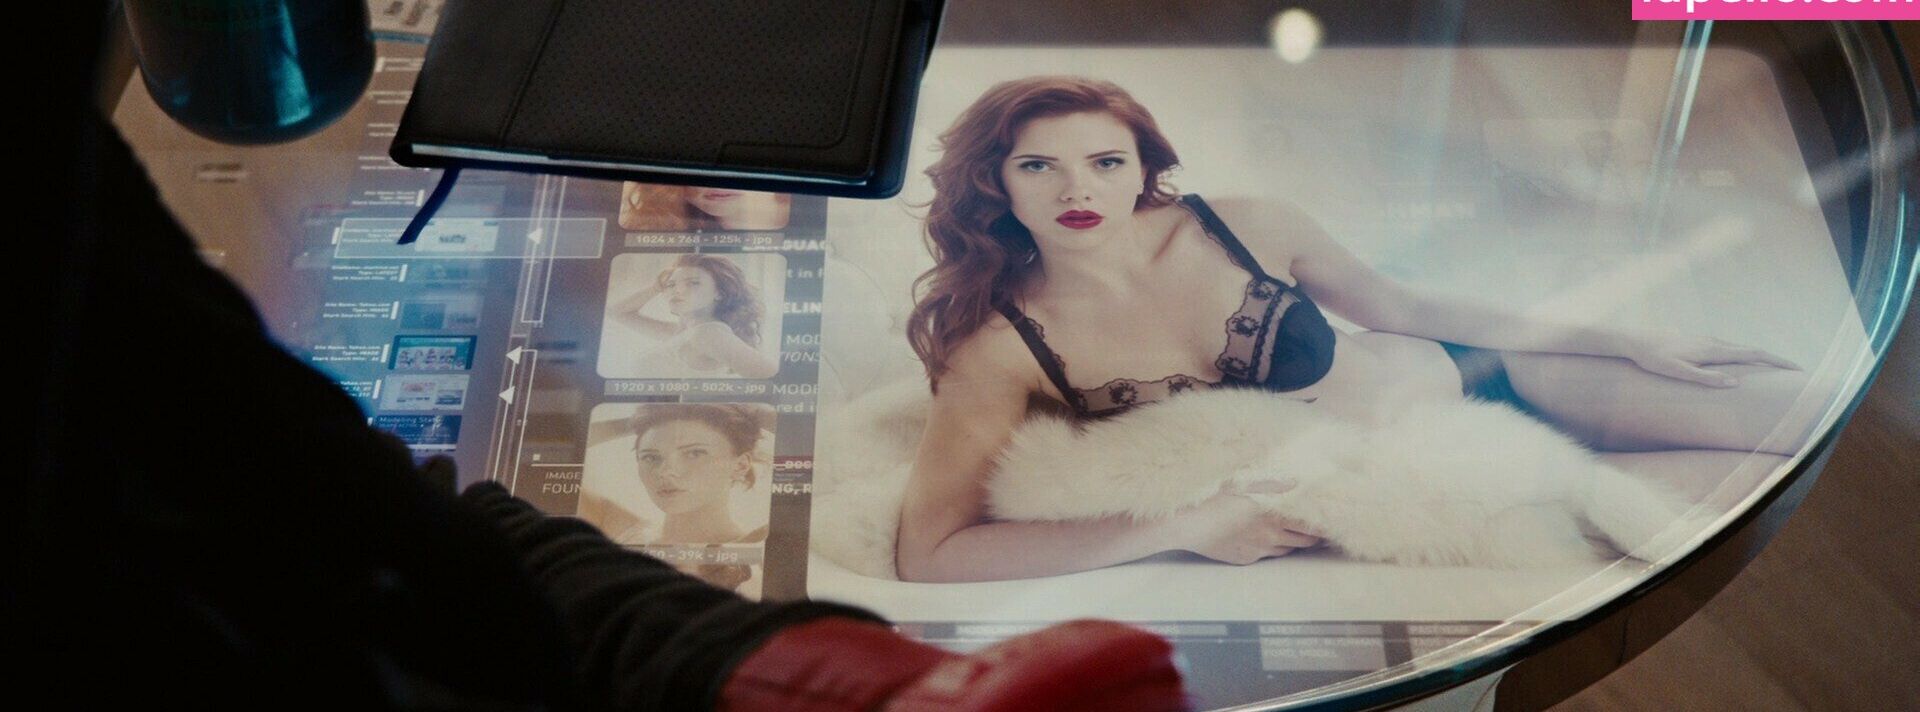 Scarlett Johansson desnuda #107652013